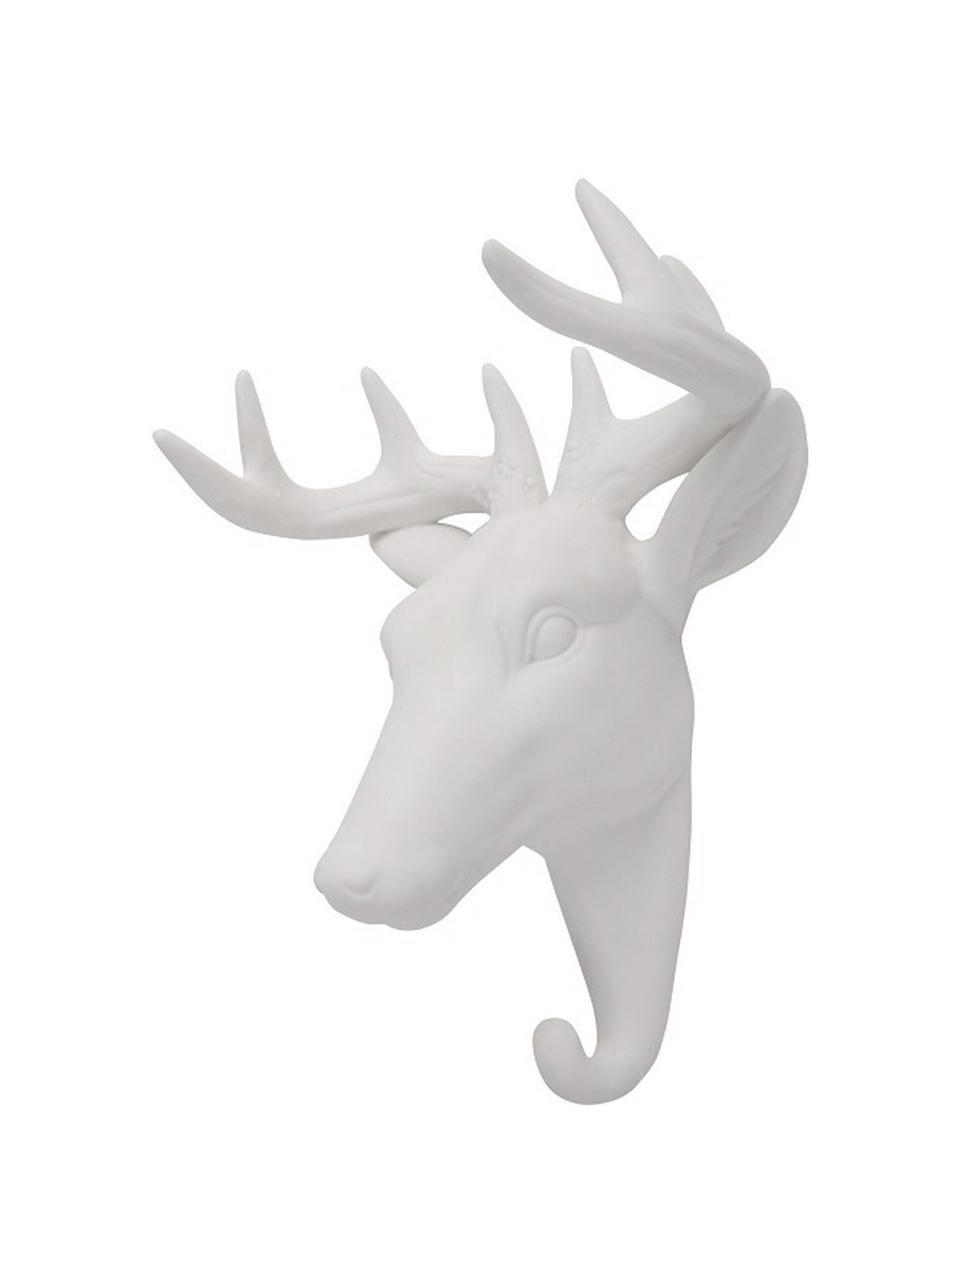 Wandhaken Deer aus Porzellan, Porzellan, Weiss, H 16 cm